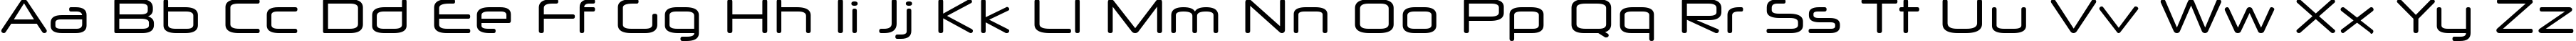 Пример написания английского алфавита шрифтом Neuropol X Free